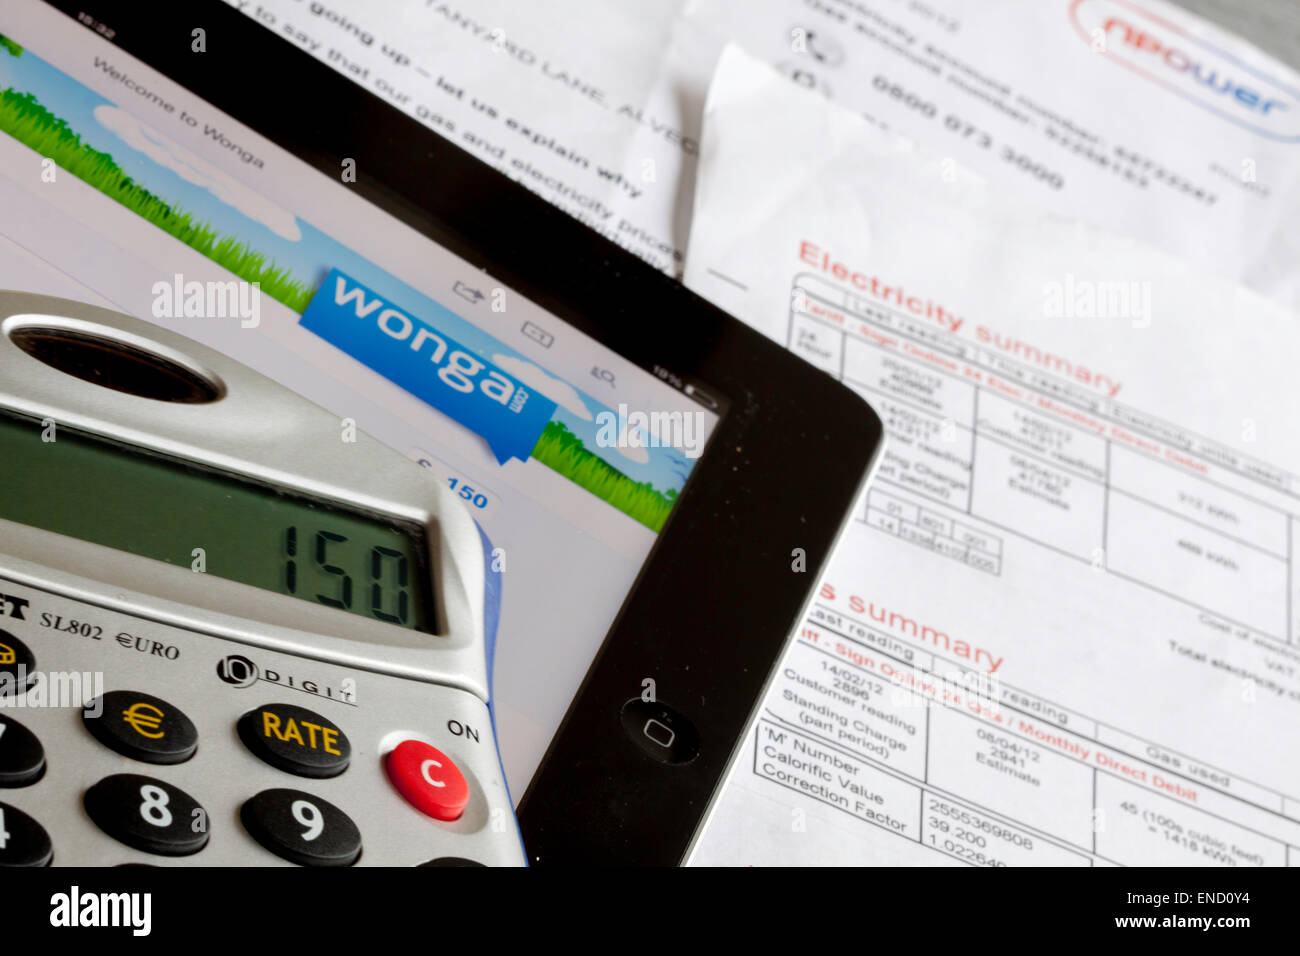 Wonga Darlehen Unternehmens-Website auf einem Ipad mit Taschenrechner und Utility Bills, England, UK Stockfoto